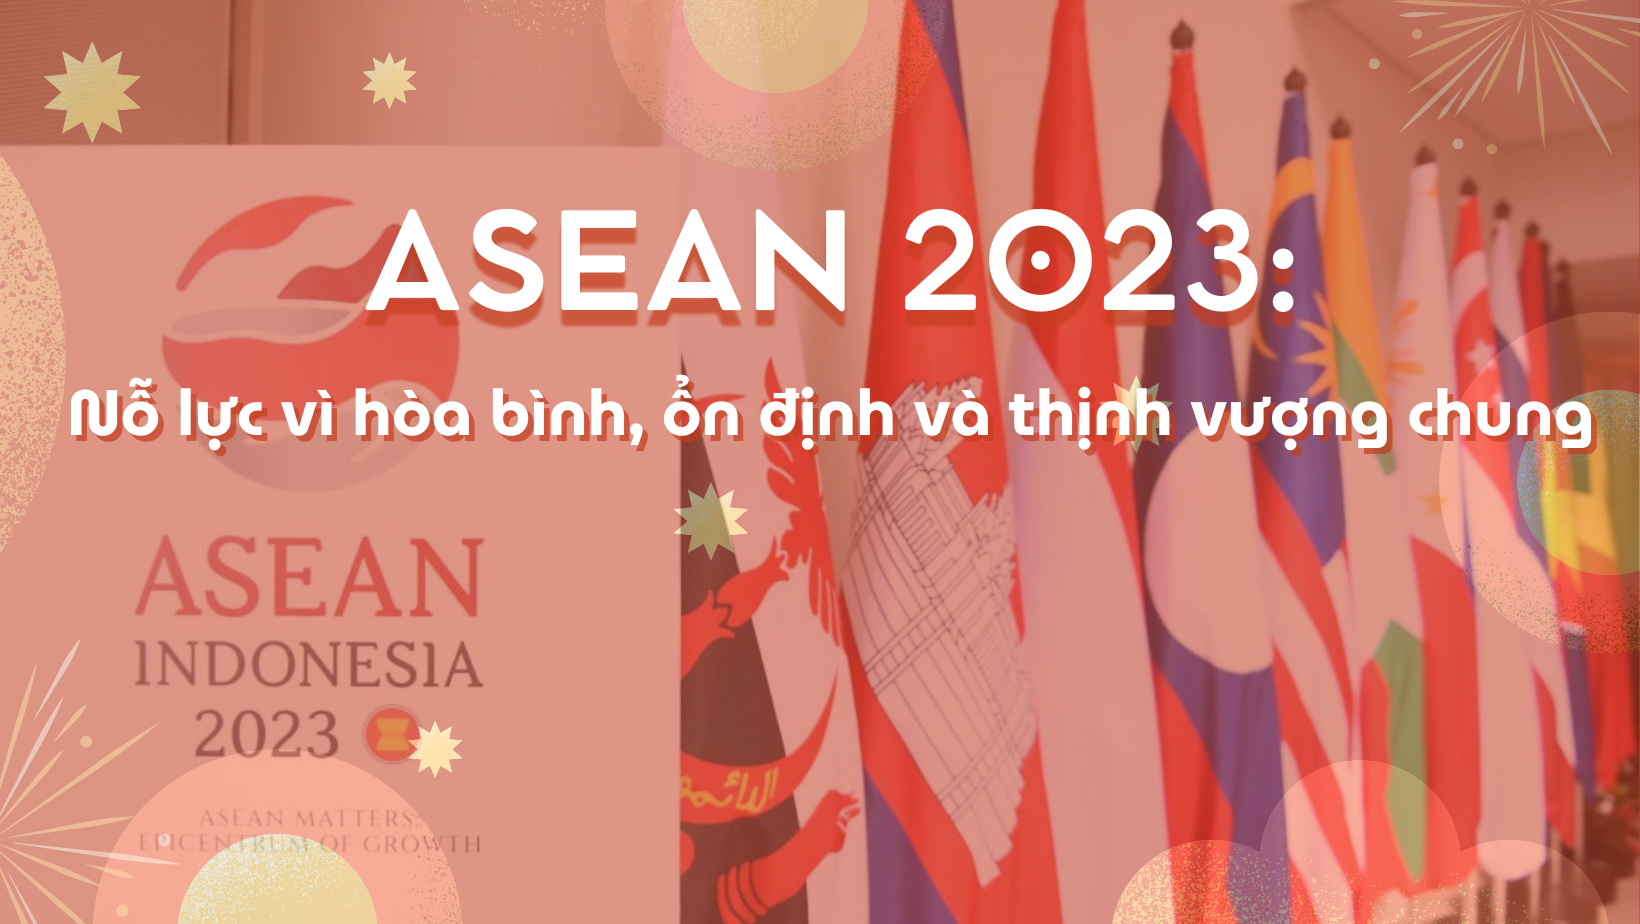 ASEAN 2023: Nỗ lực vì hòa bình, ổn định và thịnh vượng chung